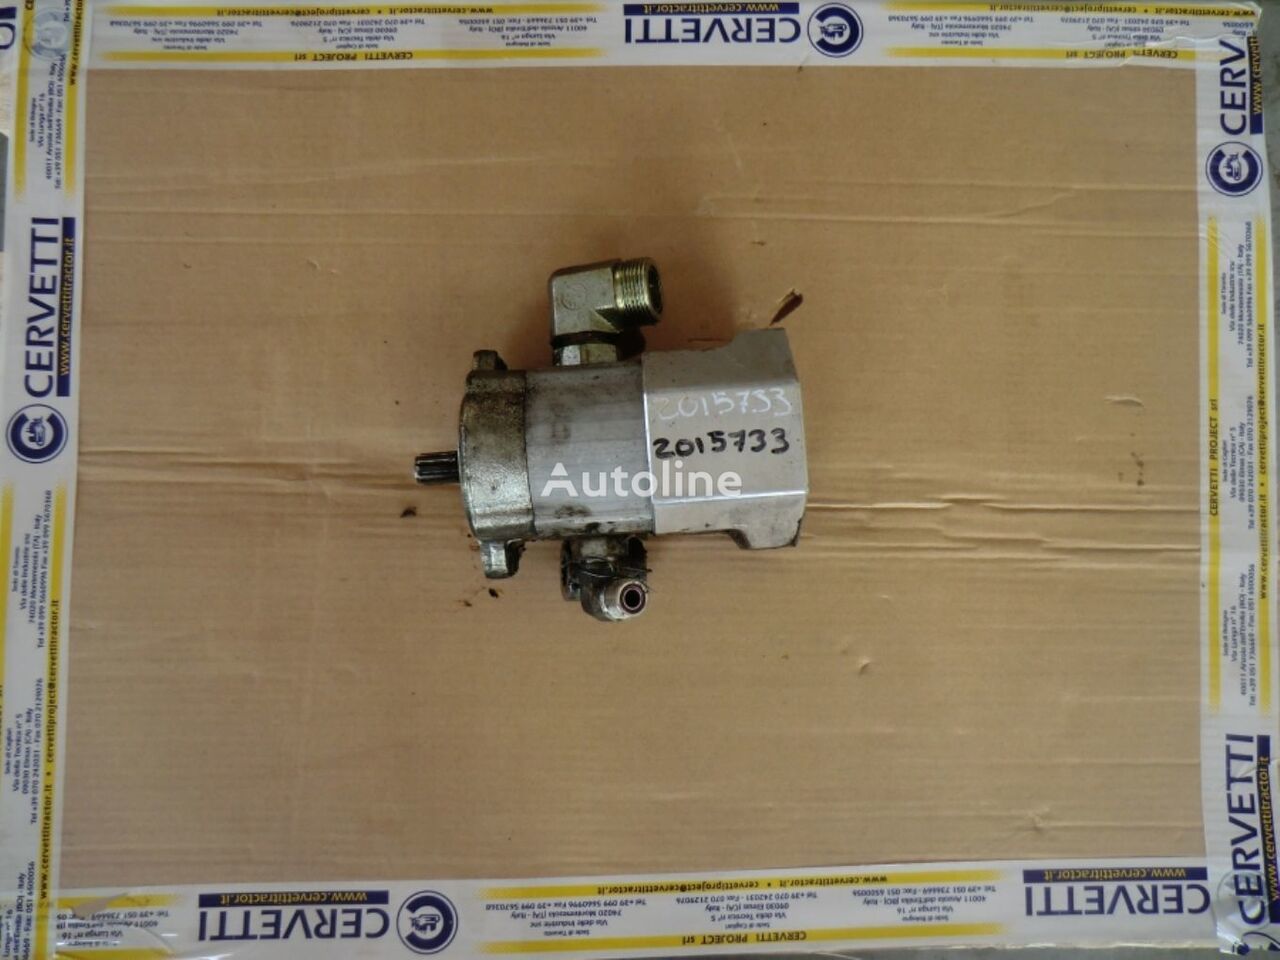 Bomba hidráulica para Dúmper articulado GP AWR00399 (2015733 2485605) gear pump: foto 2